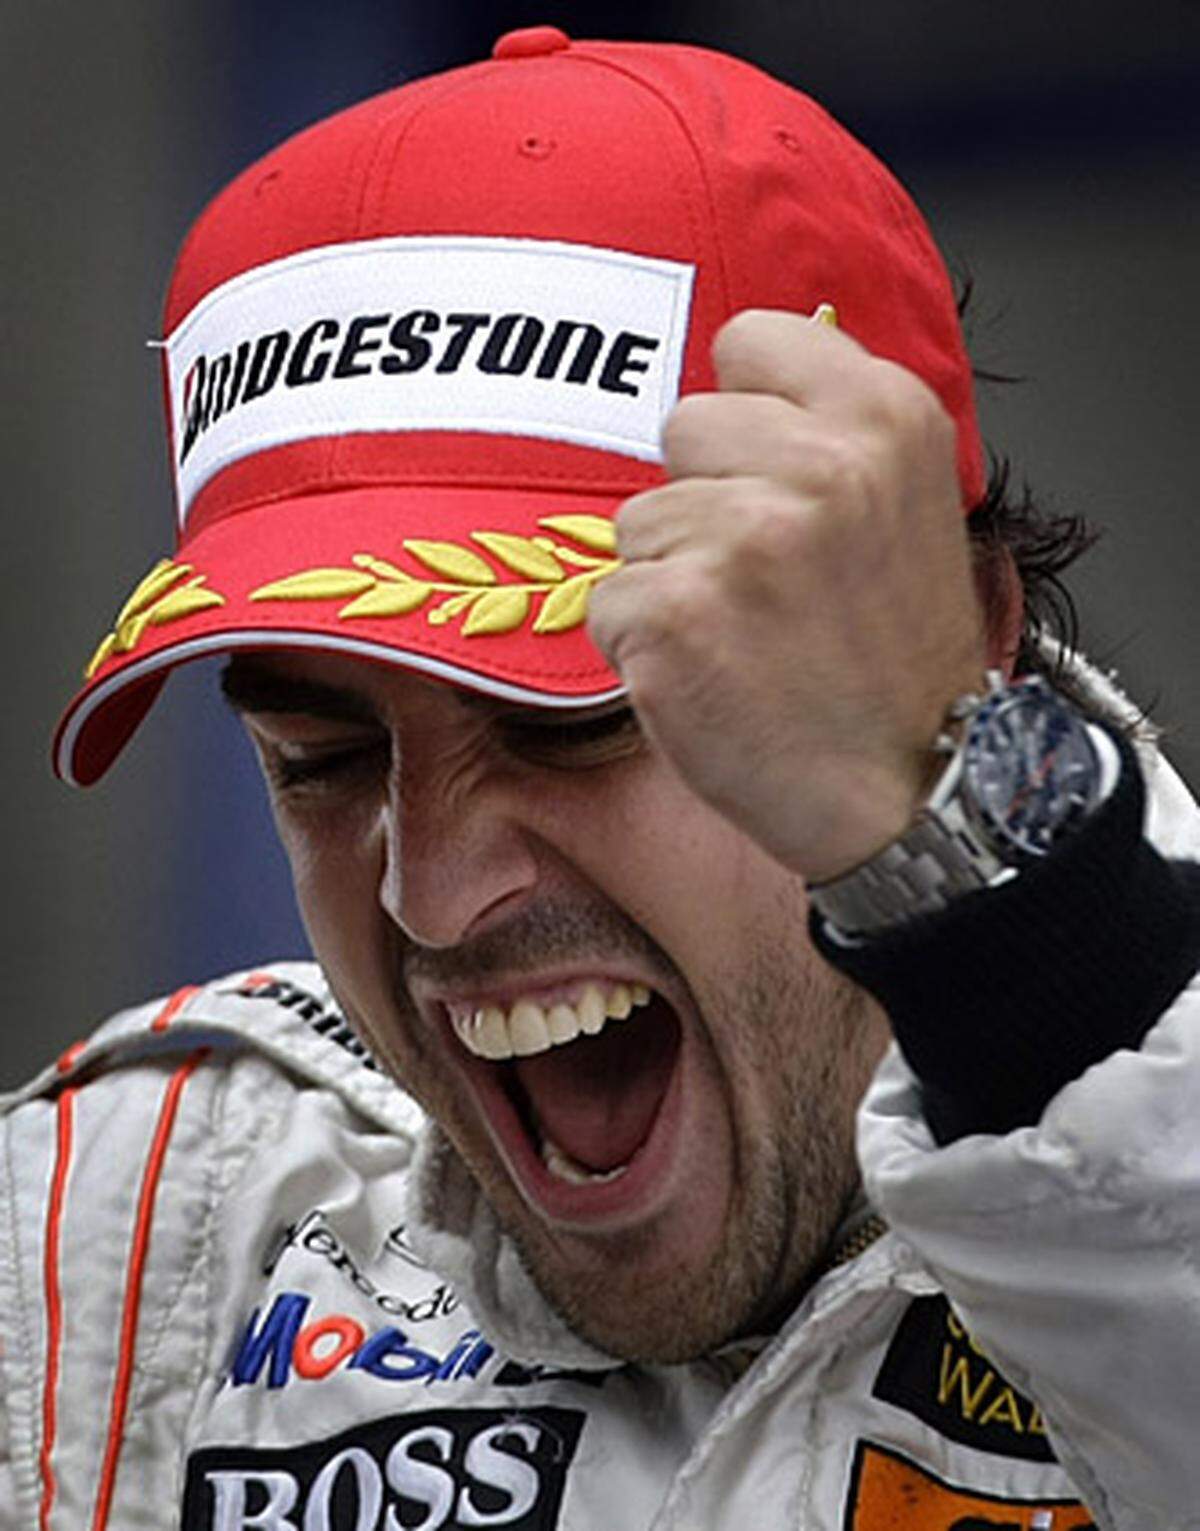 Streckenbezeichnung: Nürburgring  Streckenlänge: 5,148 km  Runden: 60  Renndistanz: 308,88 km  Bisher letzter Sieger: Fernando Alonso (2007)  Homepage: http://www.nuerburgring.de/